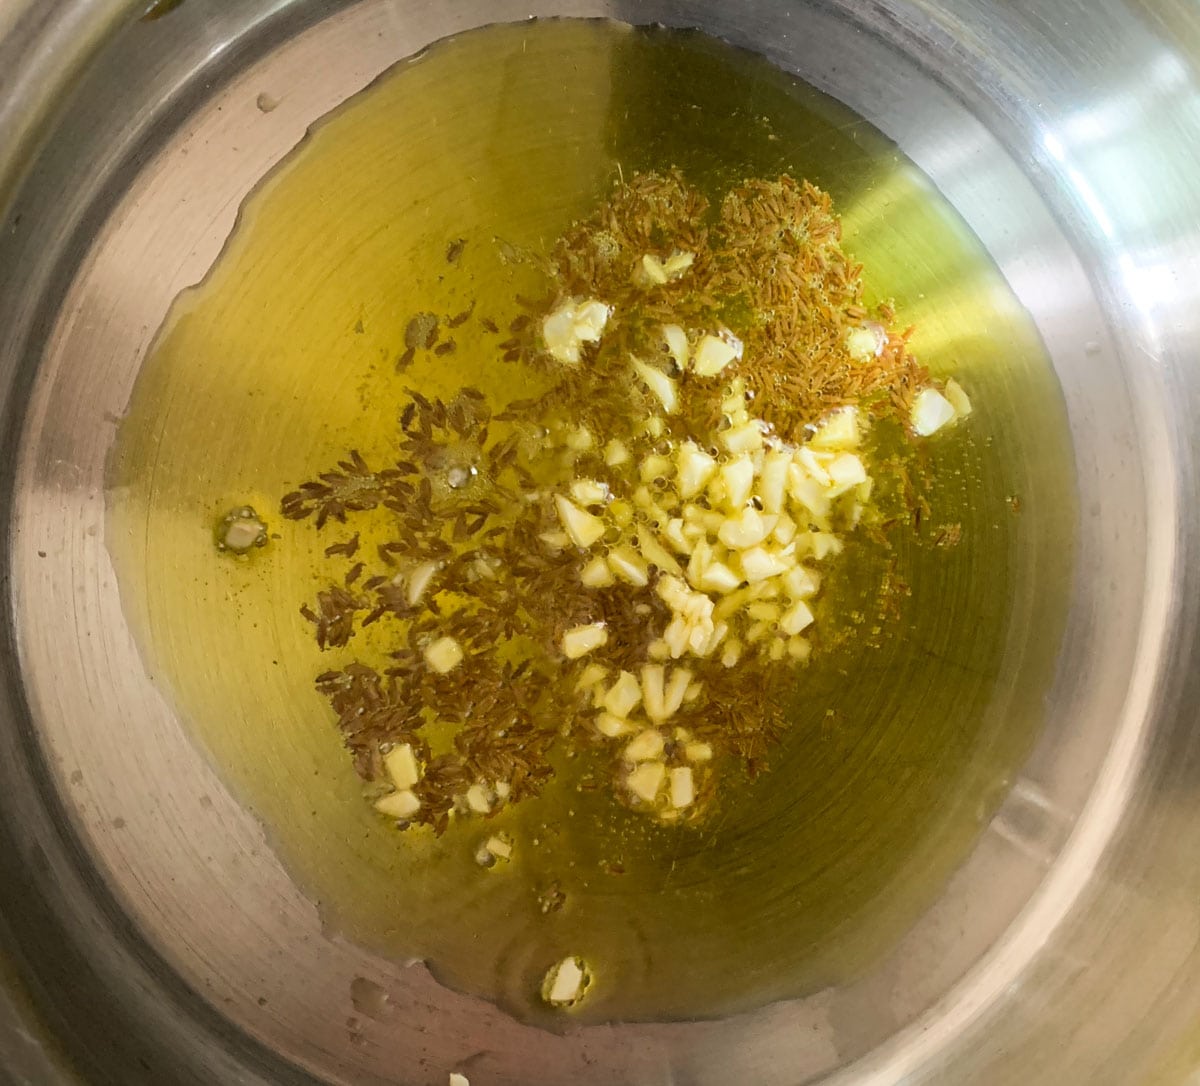 Add cumin seeds, garlic to oil to make aloo methi